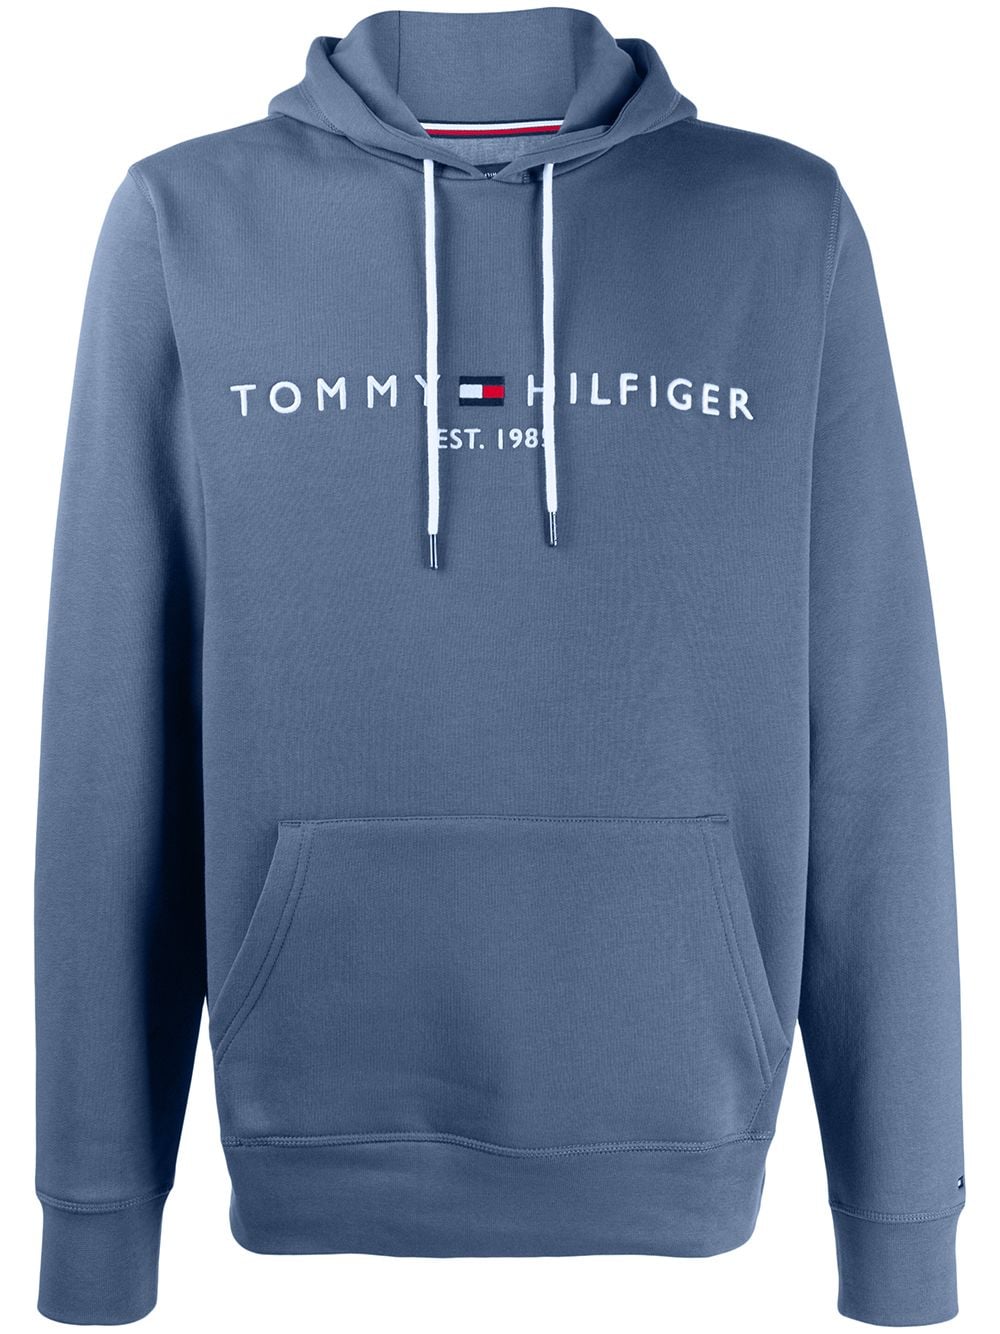 фото Tommy Hilfiger худи с вышитым логотипом